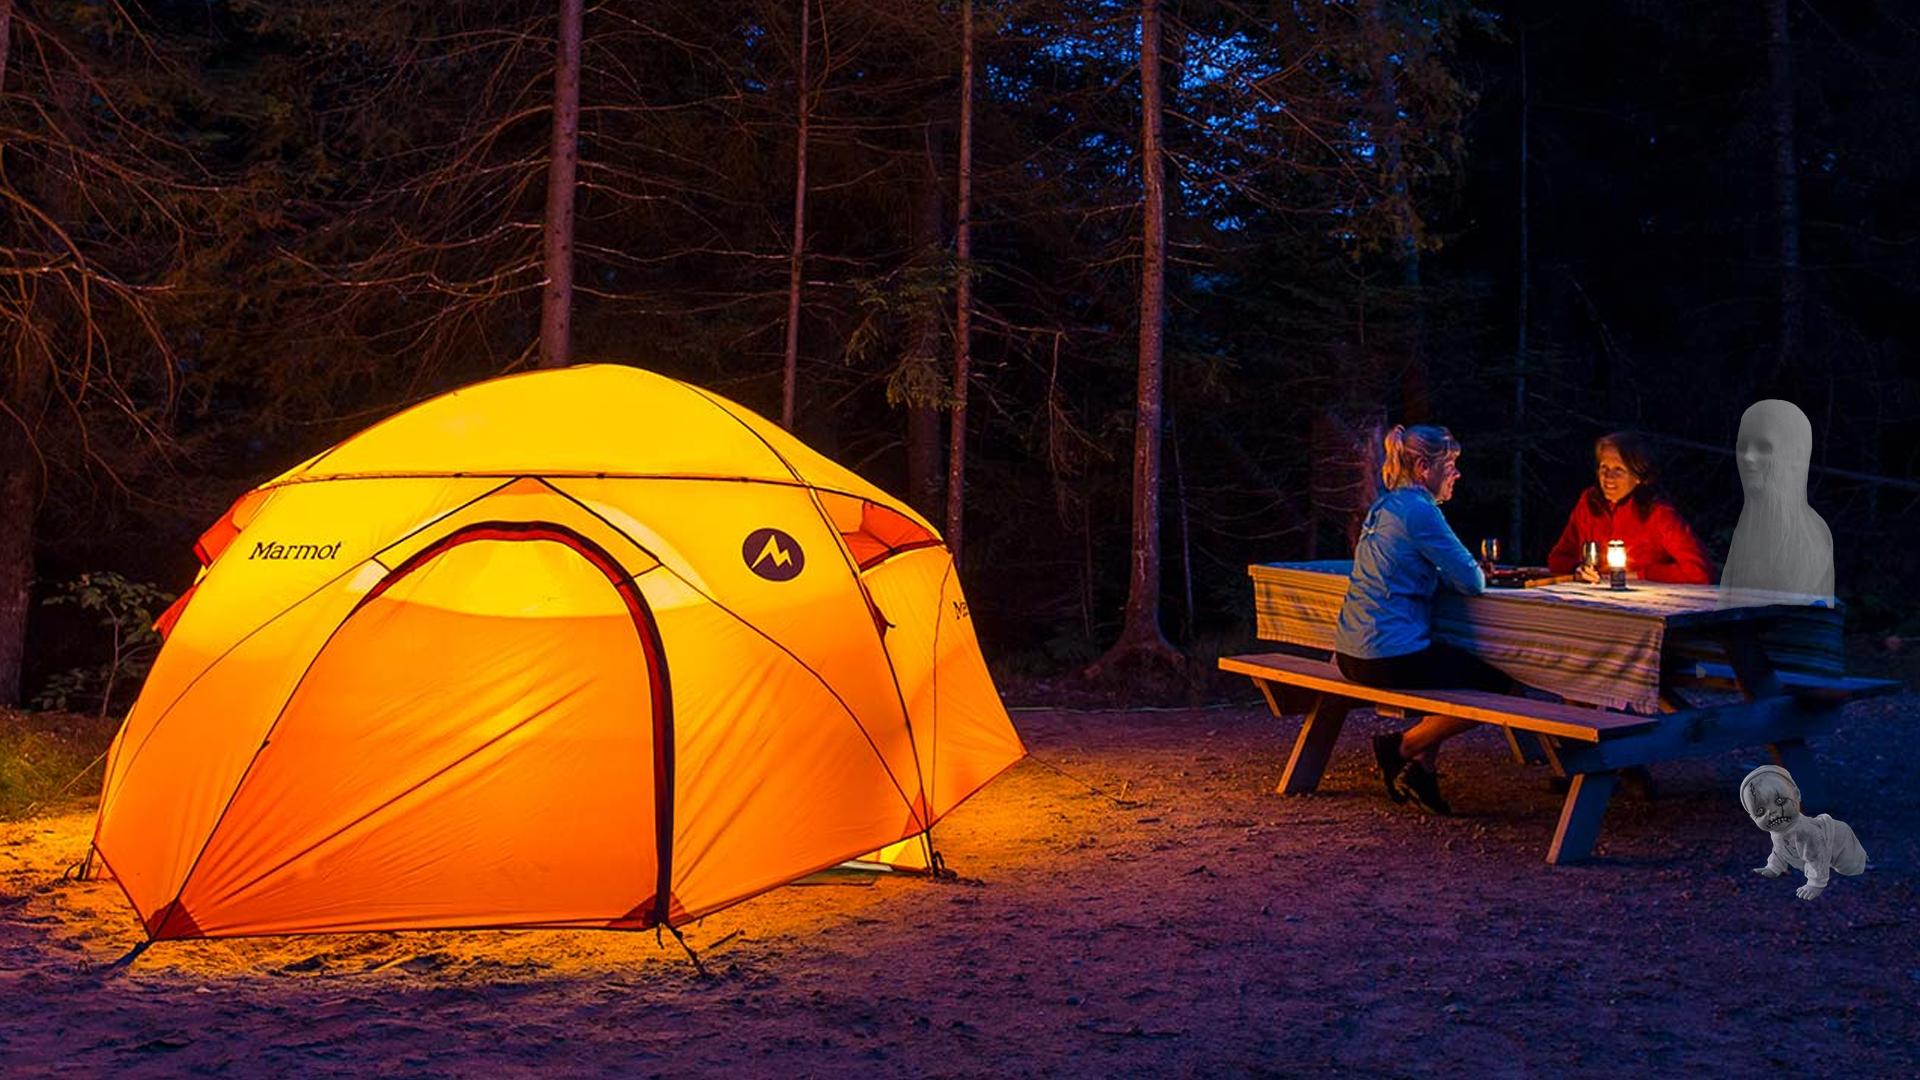 Camp go camping перевод. Палатка Camping Tent. Палатка kailas Holiday 4 Camping Tent Inca Yellow. Туризм с палатками. Поход с палатками.